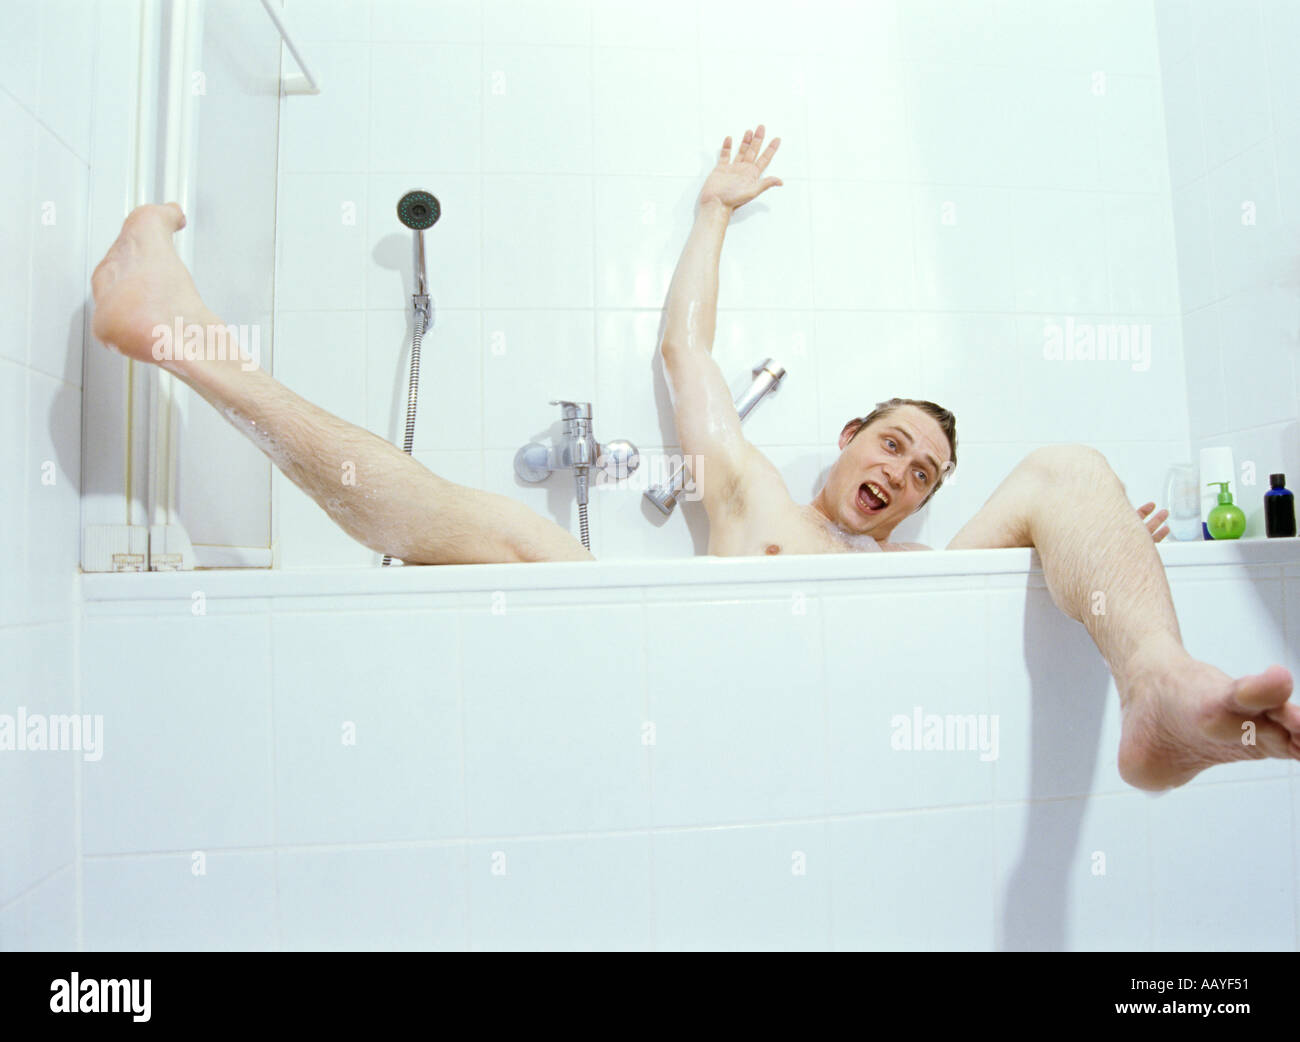 Scène d'une baignoire avec l'homme d'être drôle Banque D'Images